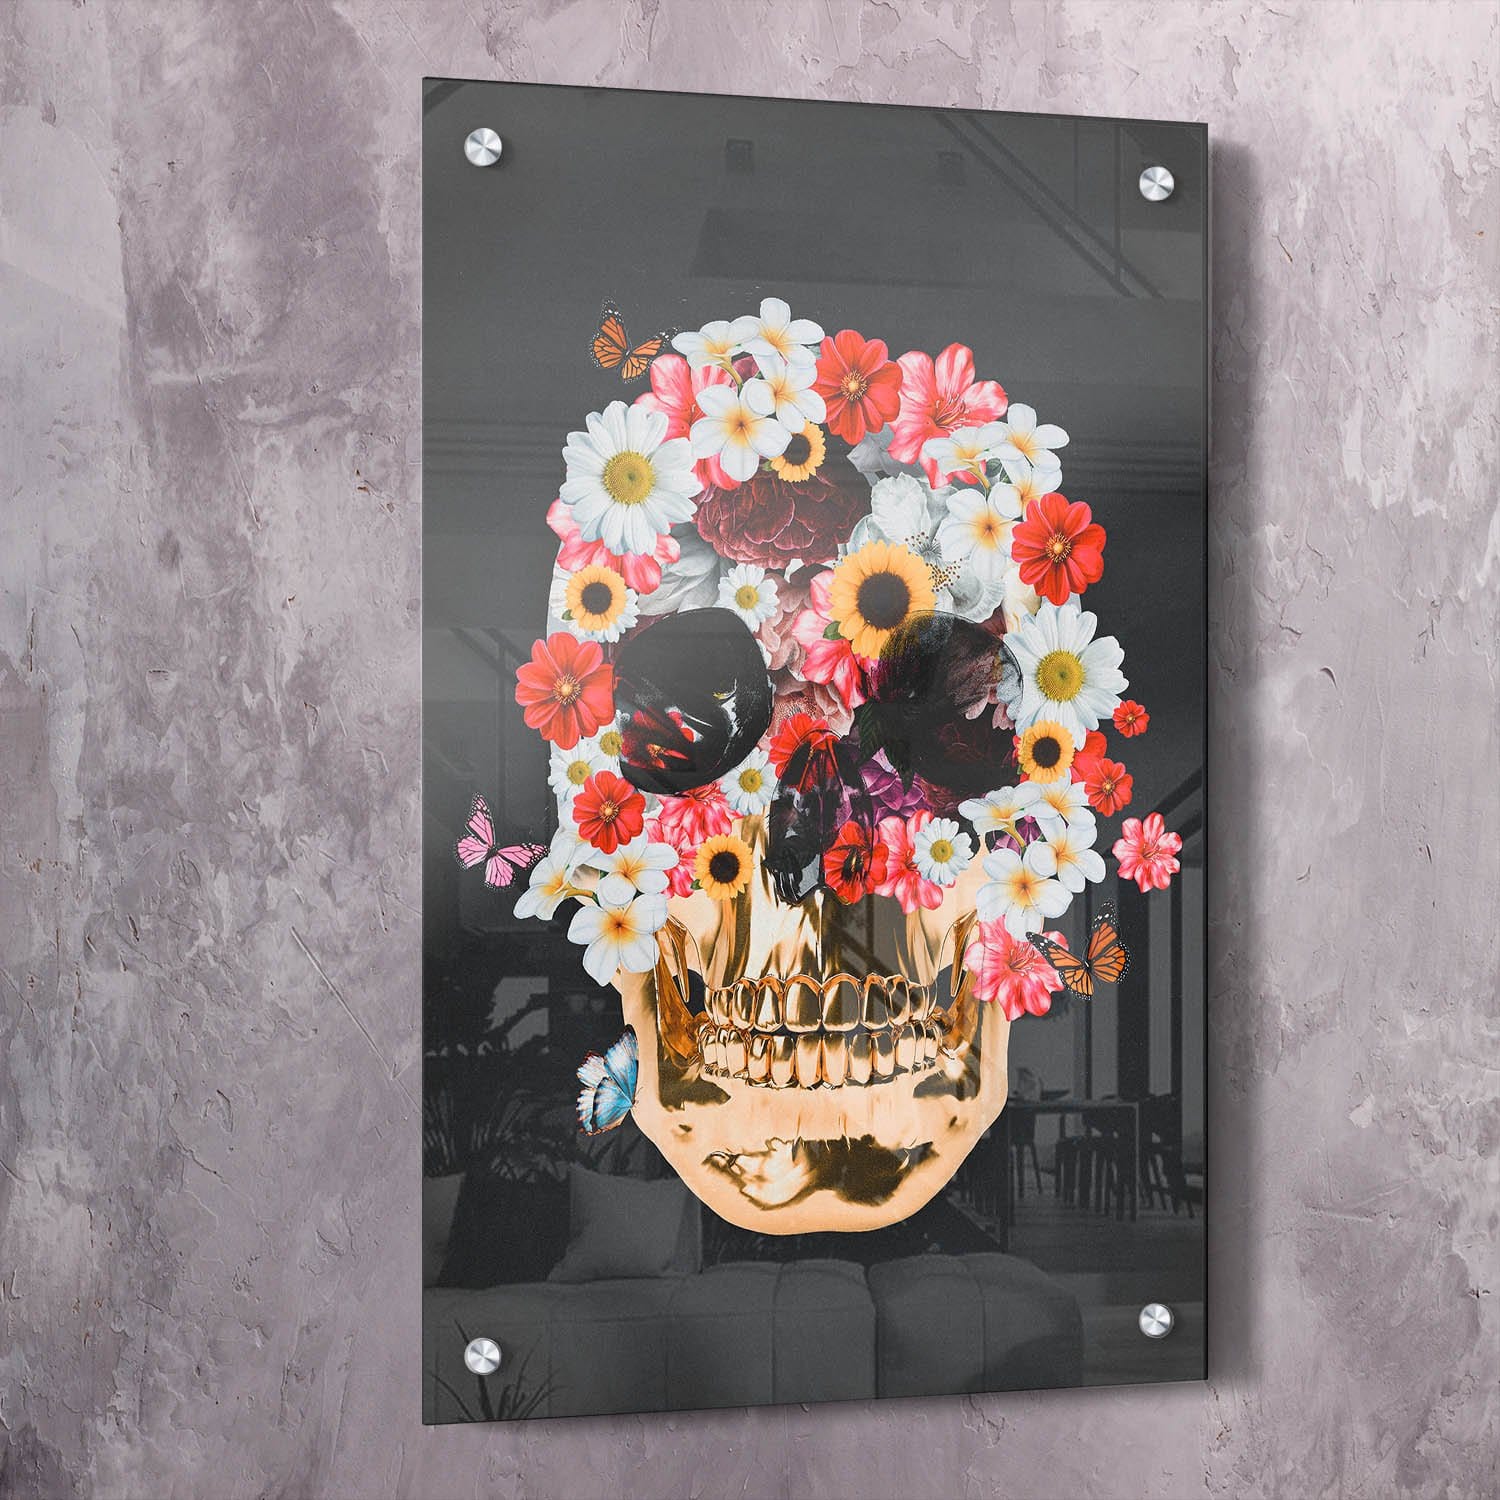 Flower Skull Wall Art | Inspirational Wall Art Motivational Wall Art Quotes Office Art | ImpaktMaker Exclusive Canvas Art Portrait